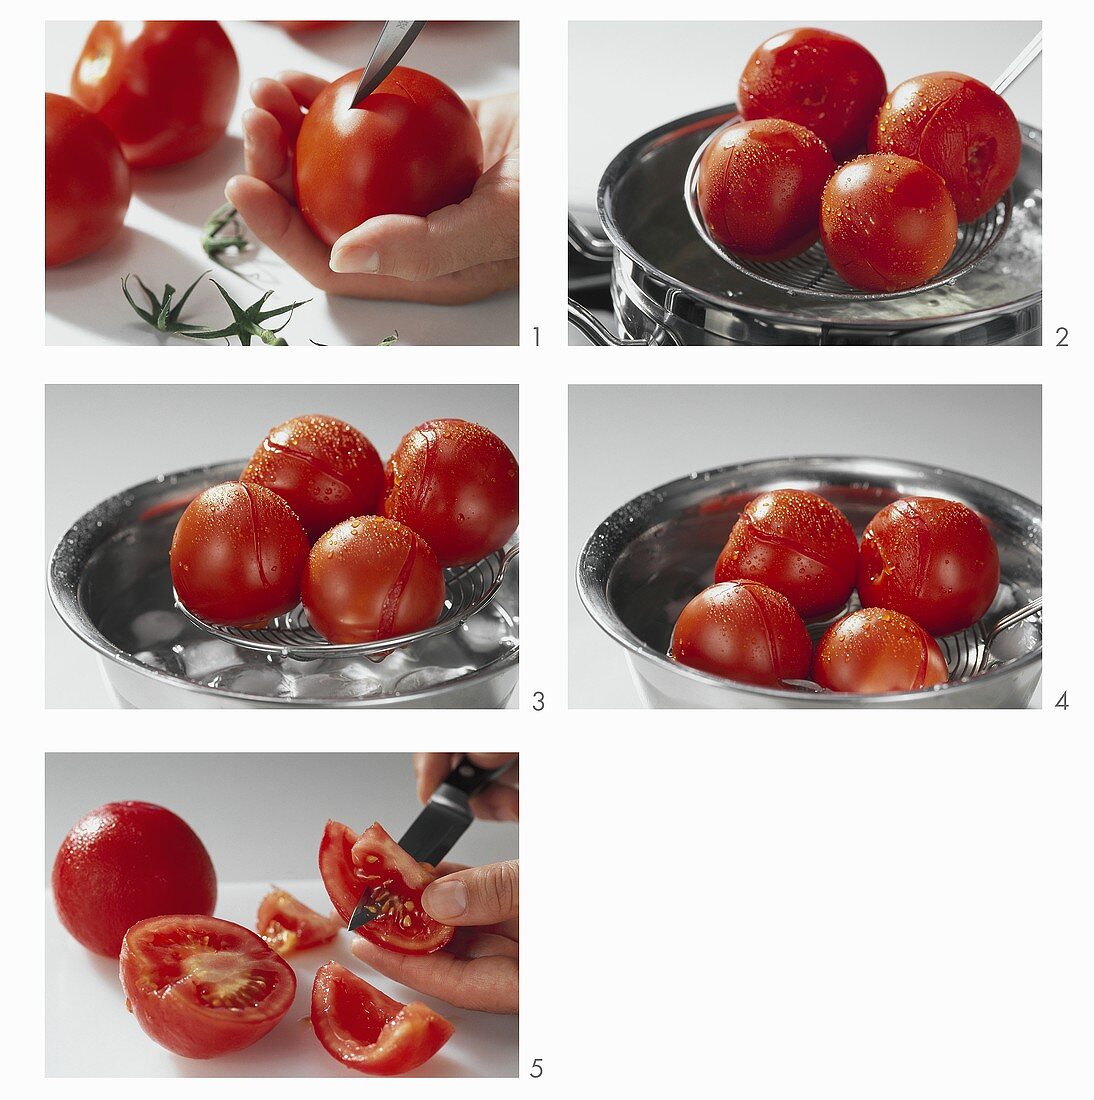 Blanching tomatoes